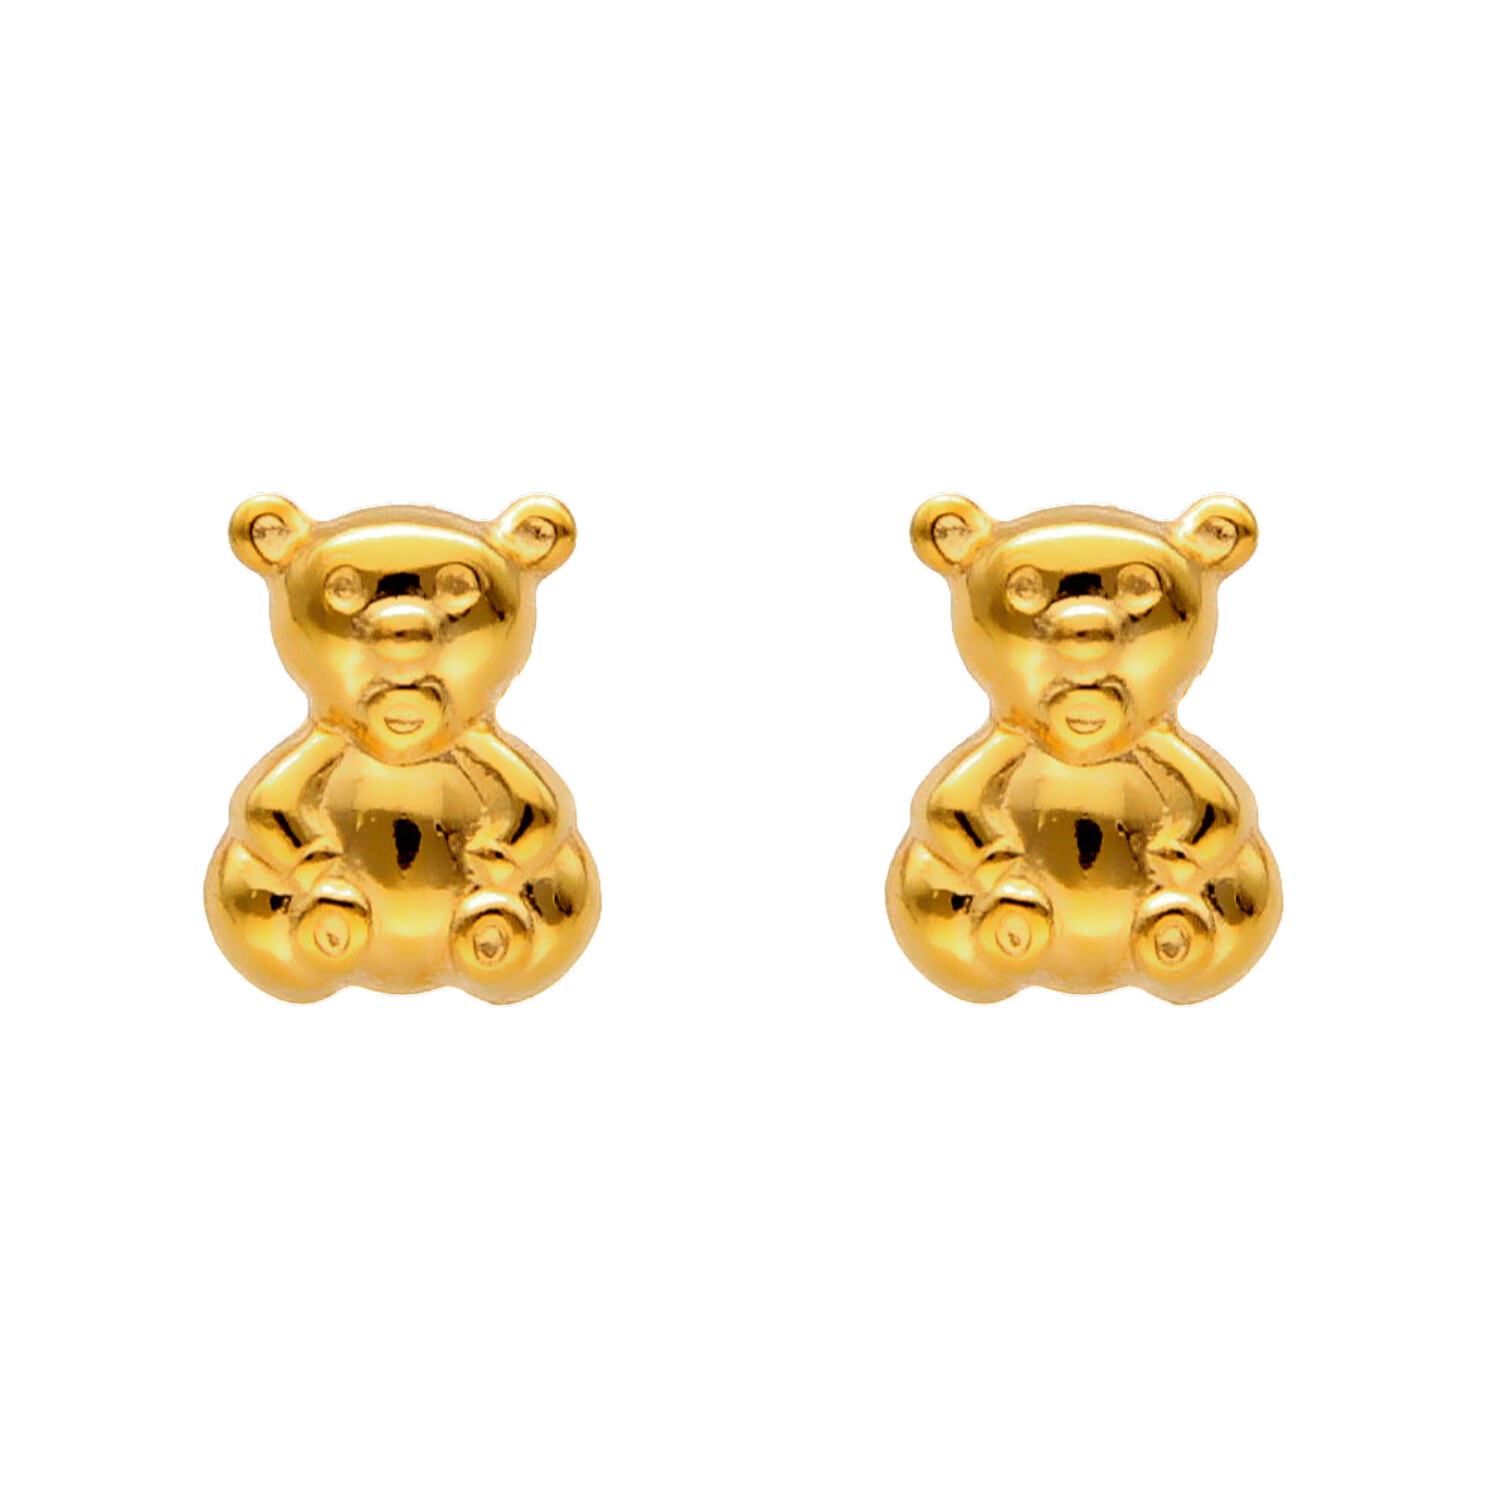 Yellow gold teddy bear earrings